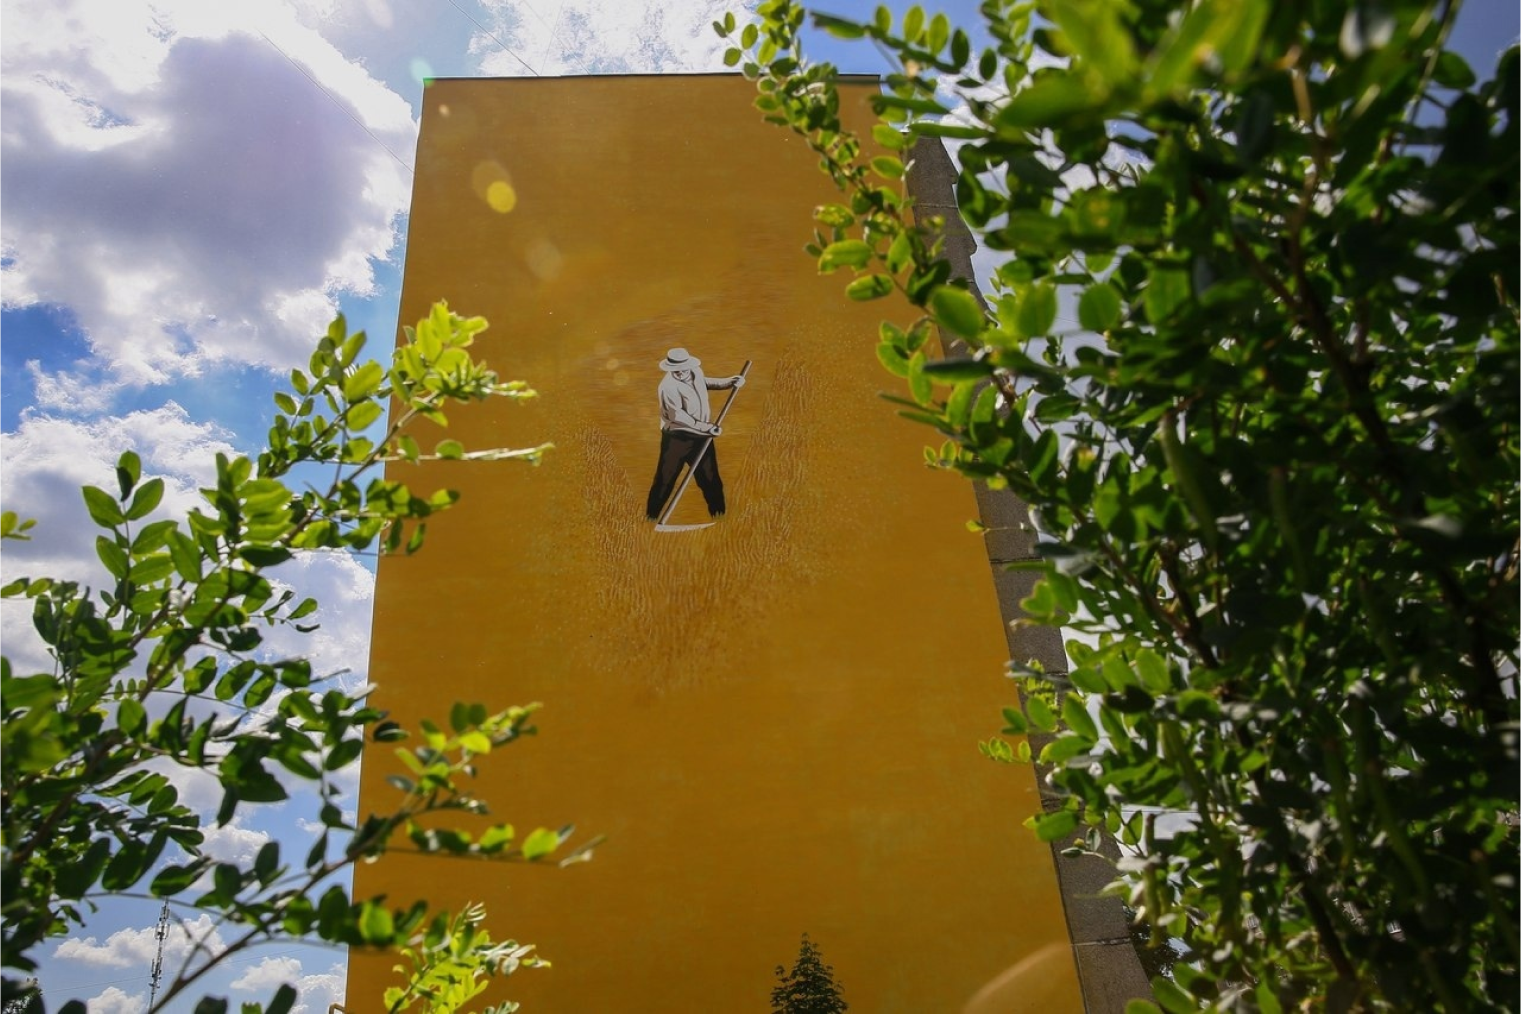 А еще благодаря Арт⁠-⁠Оврагу унылые стены выксунских многоэтажек обрели сочные цвета и оживляют невзрачные будни настенной живописью.Источник: vyksafest.com